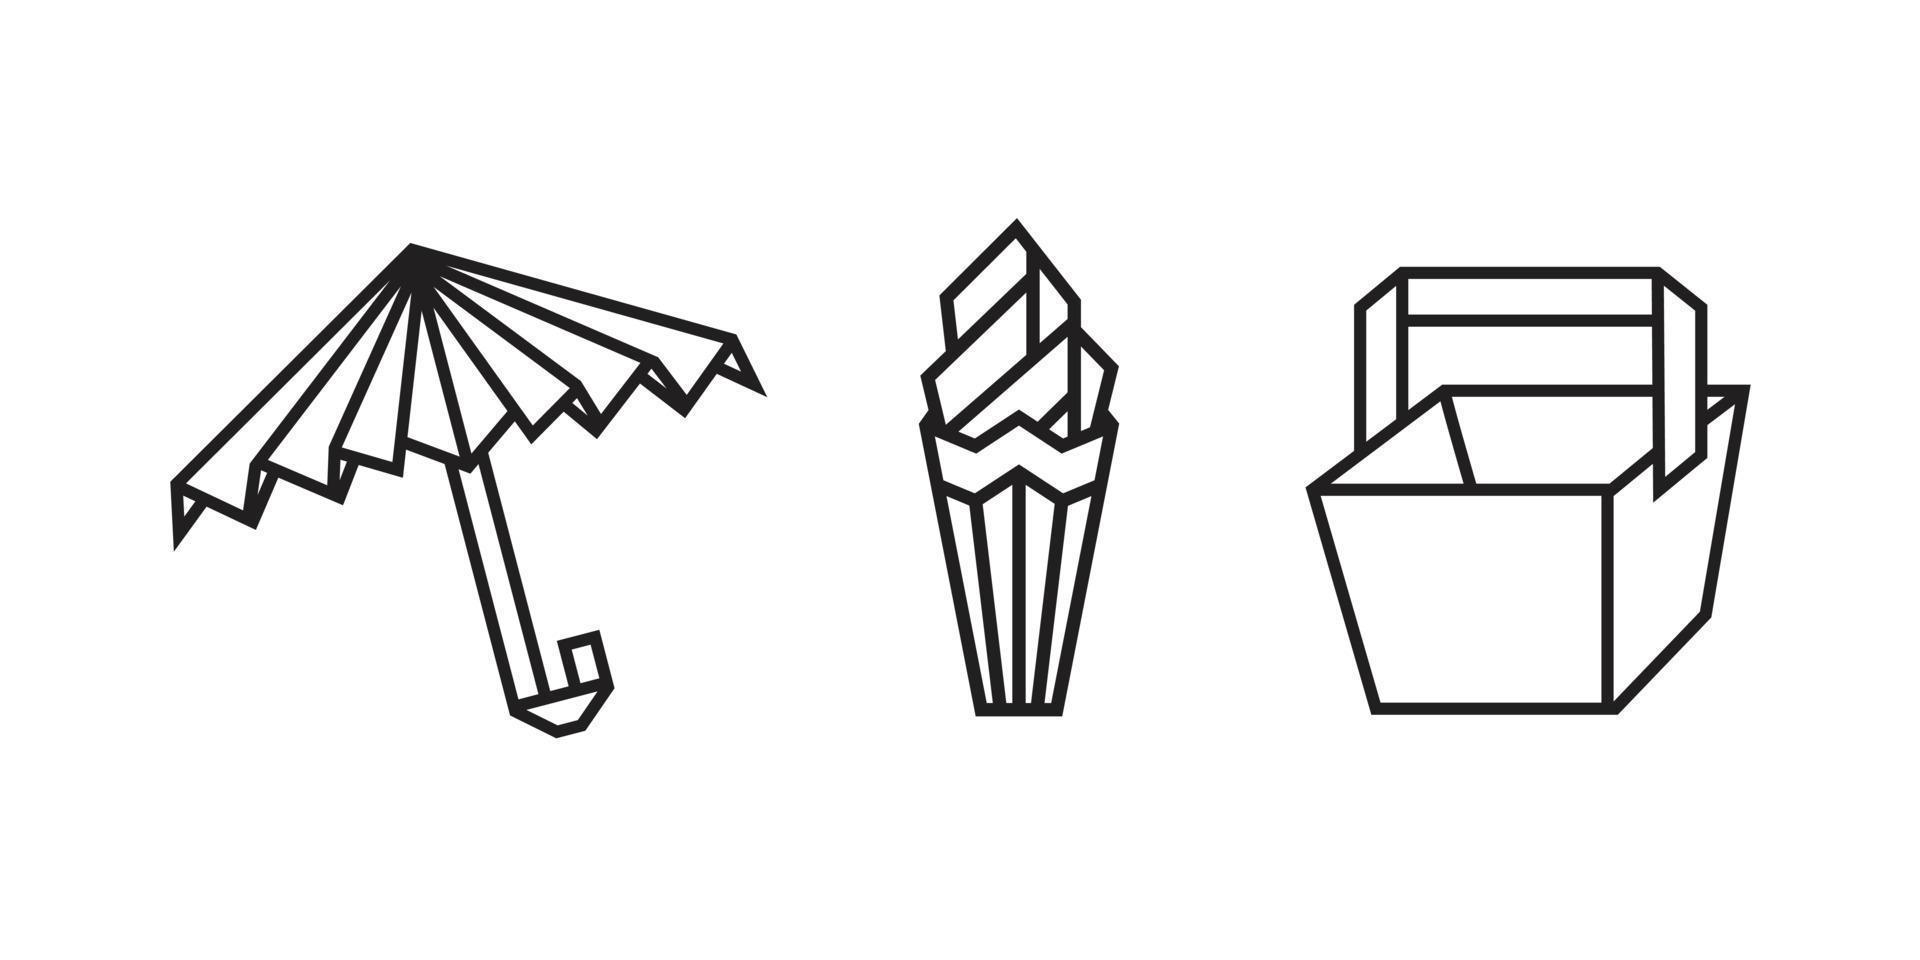 illustrazioni di cose per le vacanze in stile origami vettore